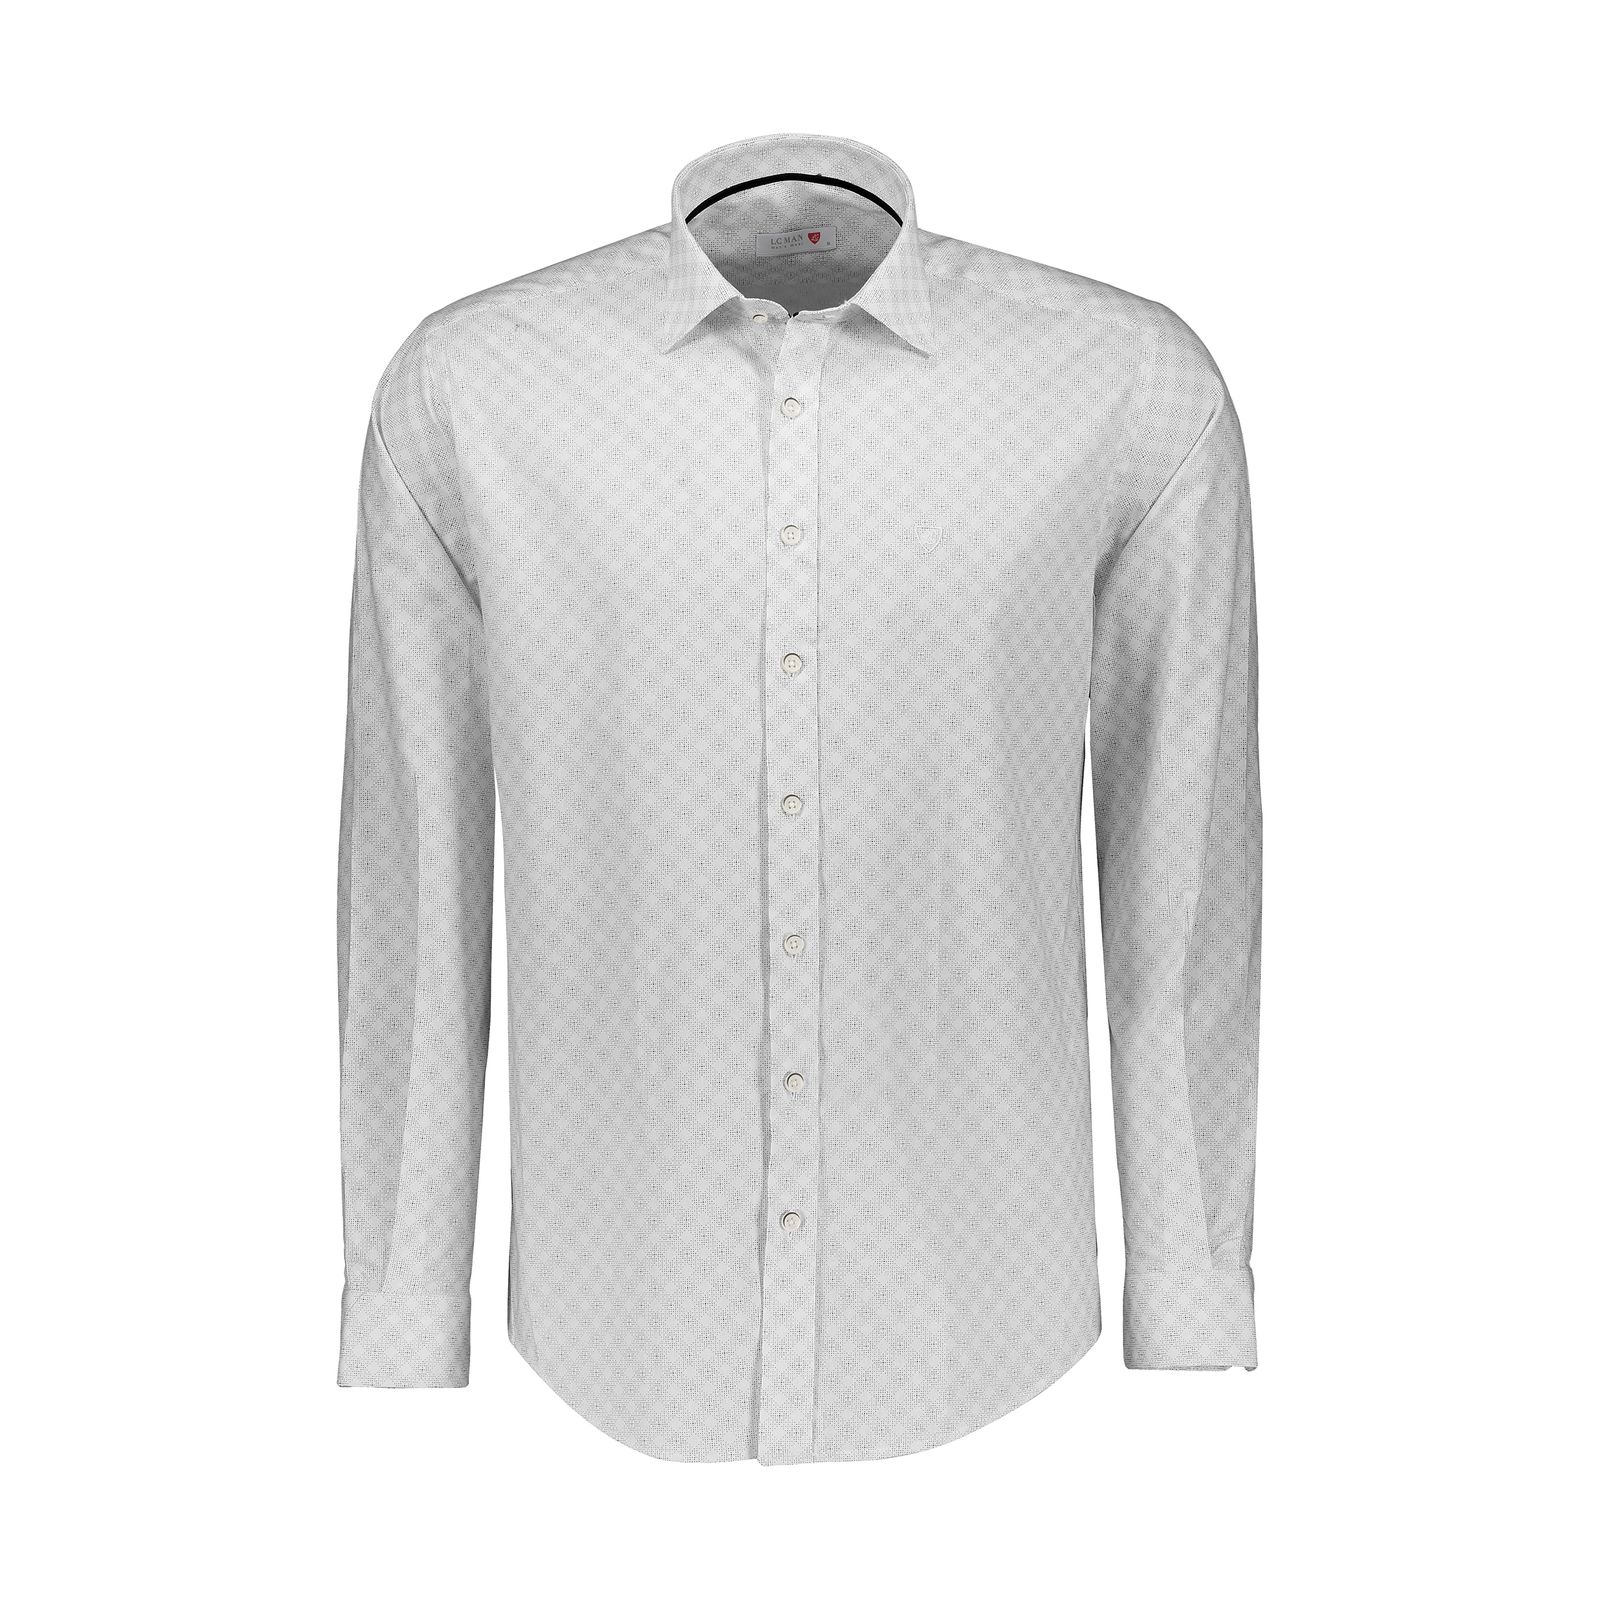 پیراهن آستین بلند مردانه ال سی من مدل 02181061-003 -  - 1